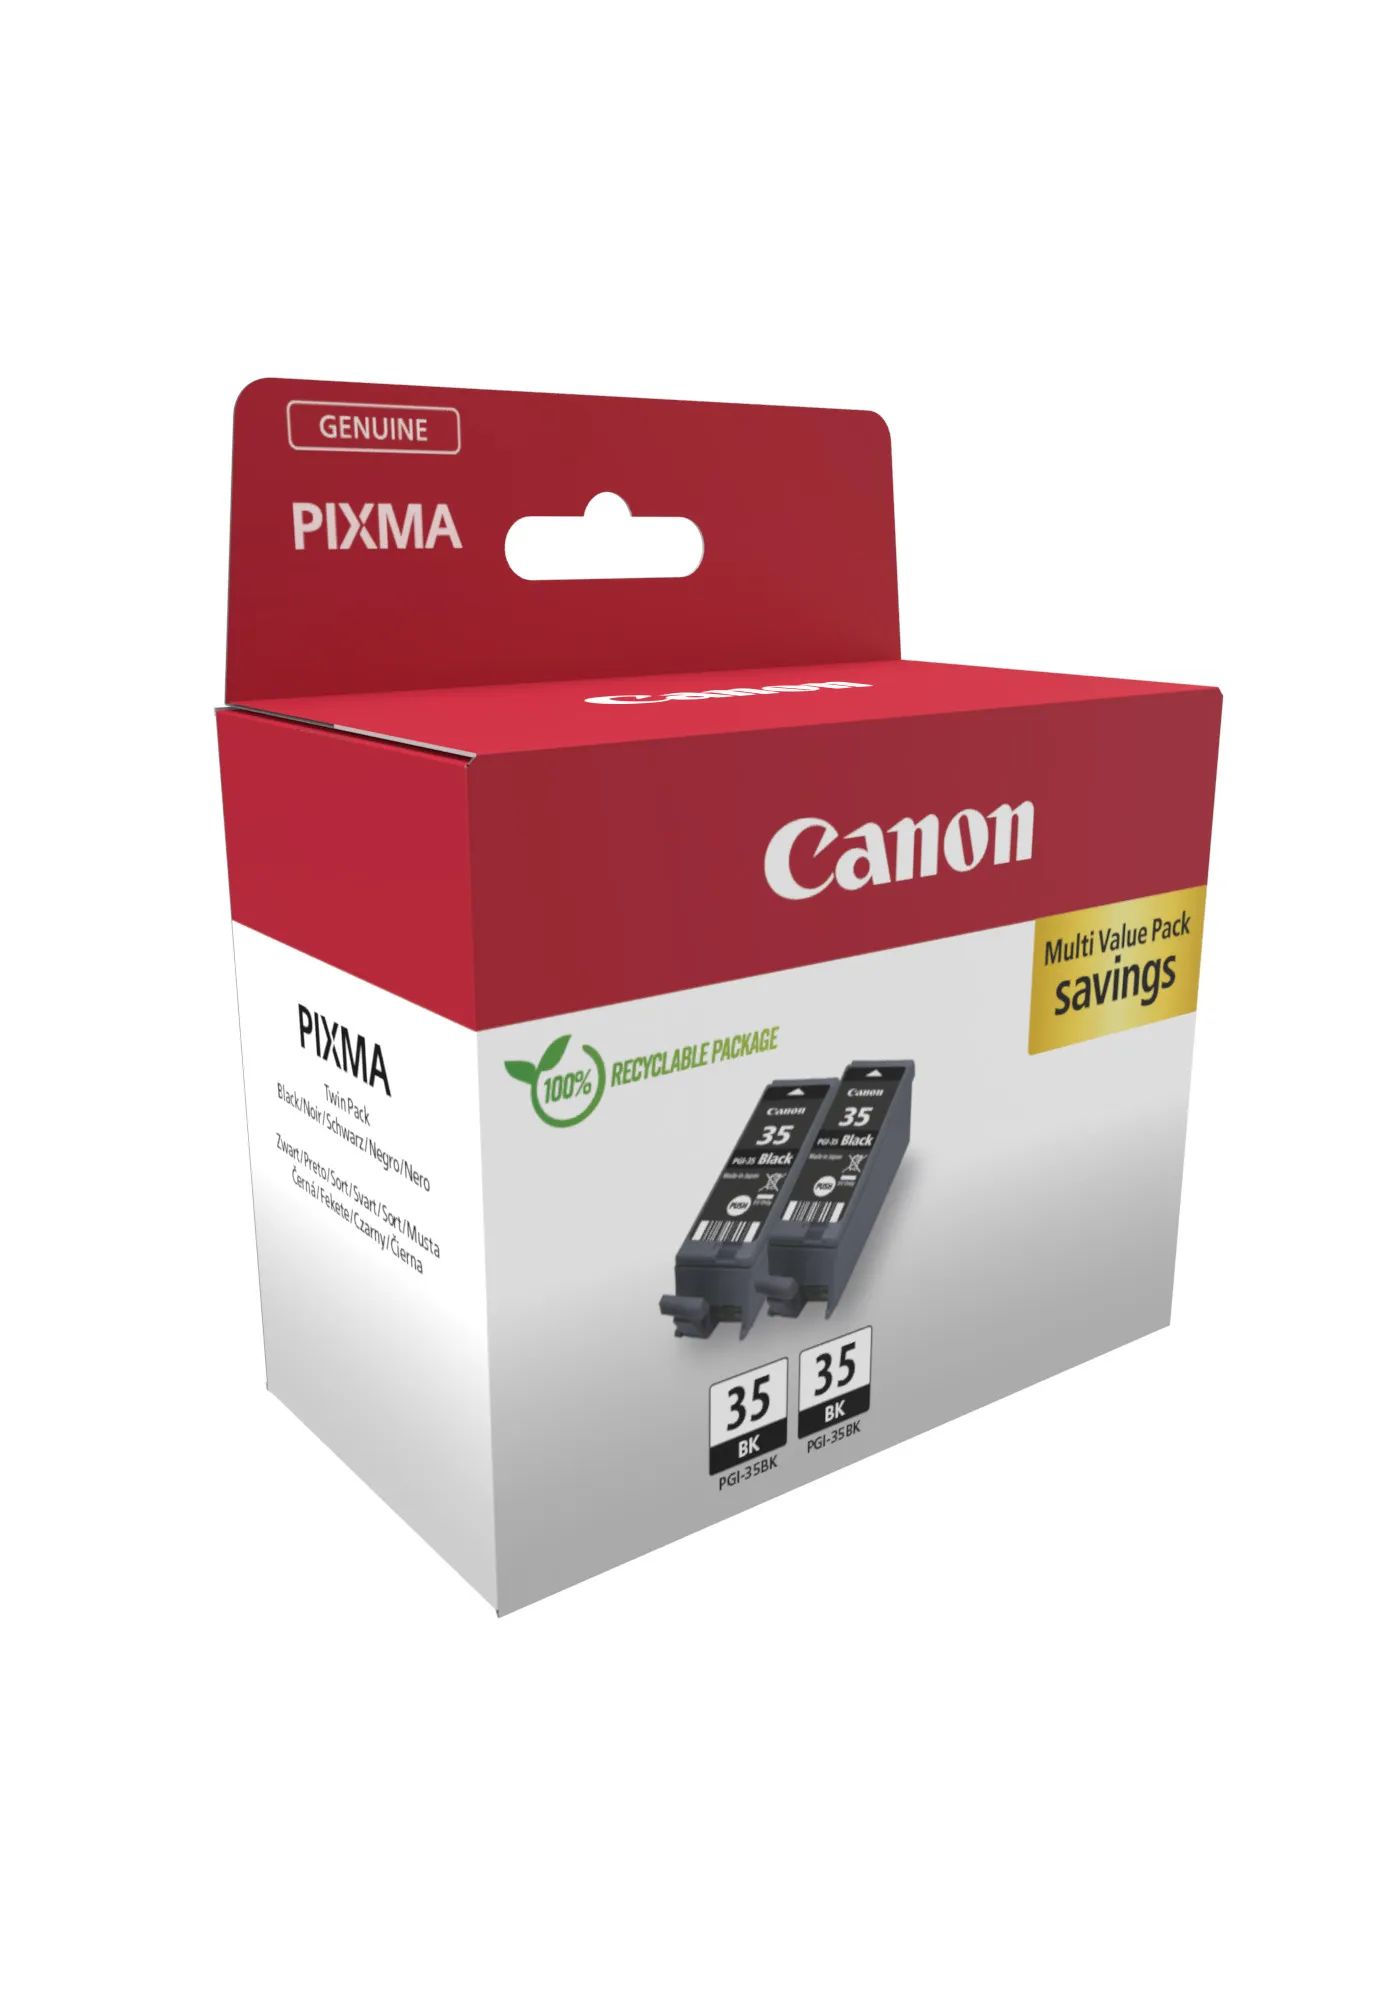 Vente CANON PGI-35 Ink Cartridge Twin Pack Canon au meilleur prix - visuel 2